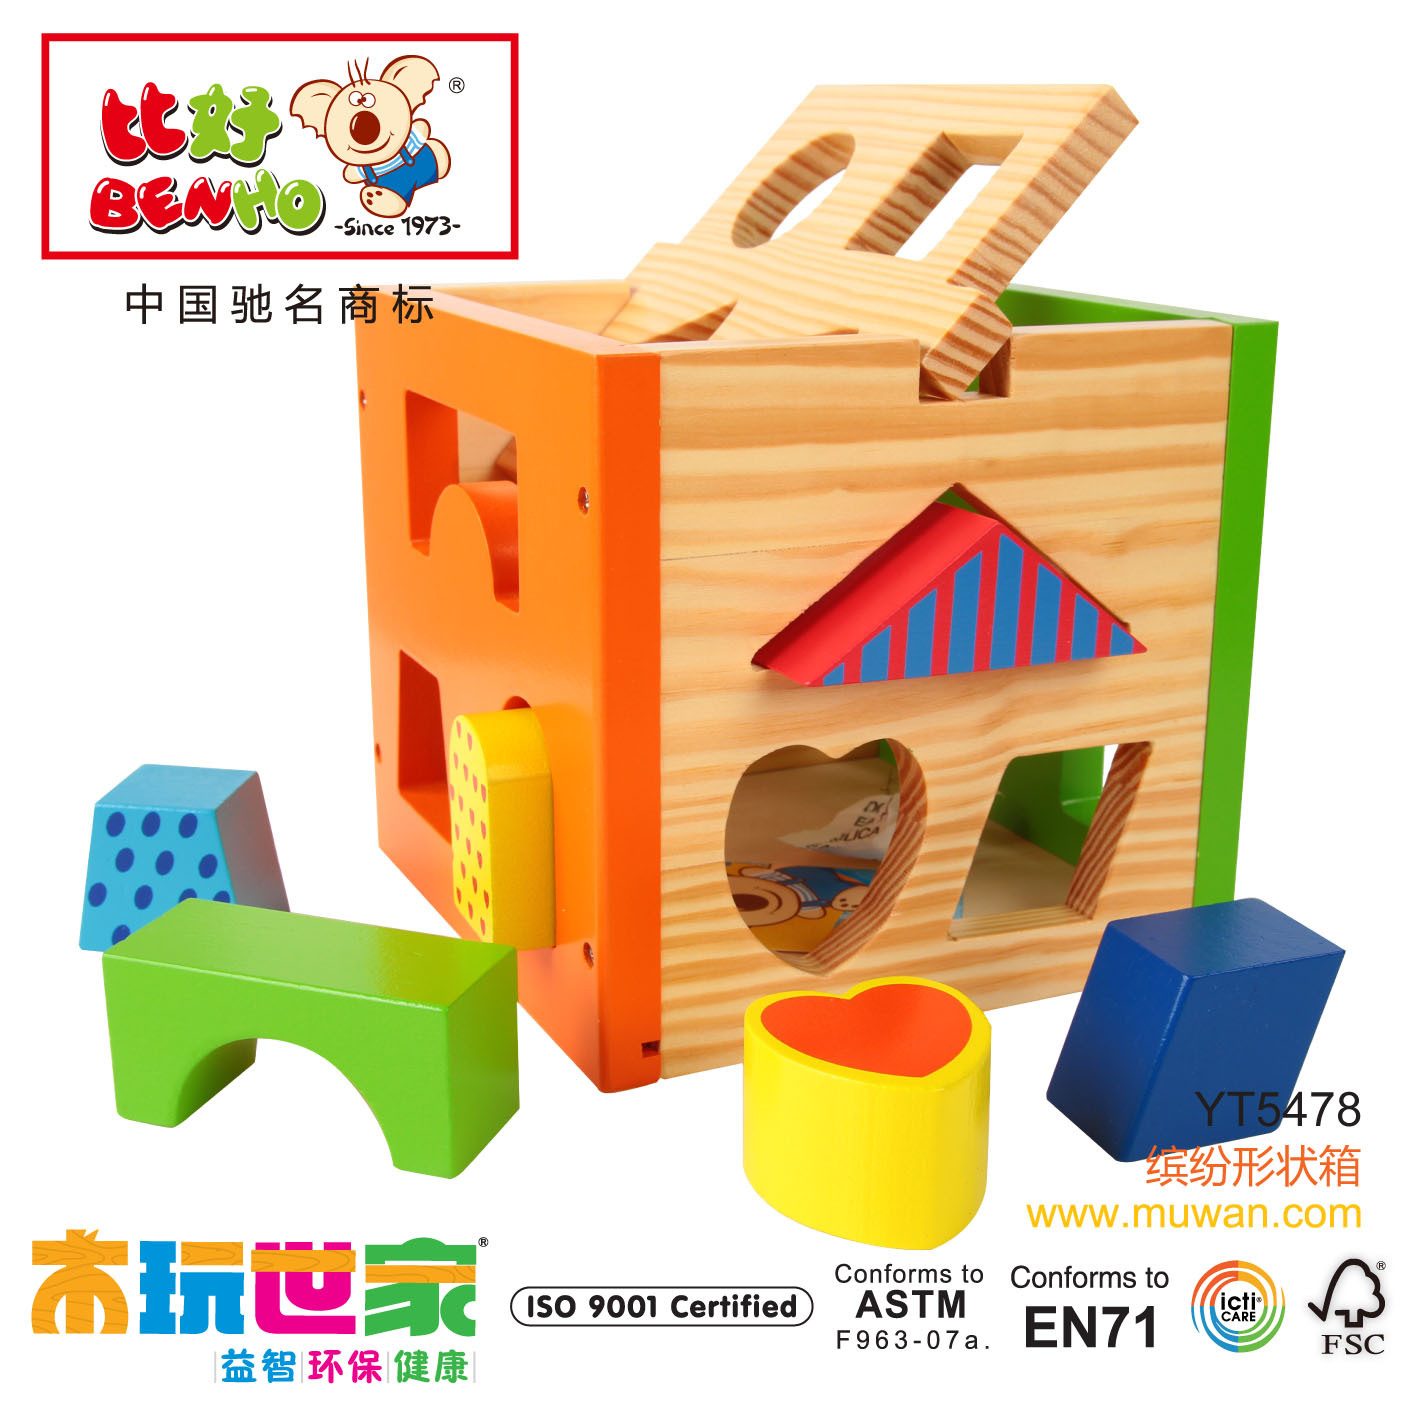 木玩世家 木制儿童益智玩具 多彩形状盒 比好-缤纷形状箱 YT5478